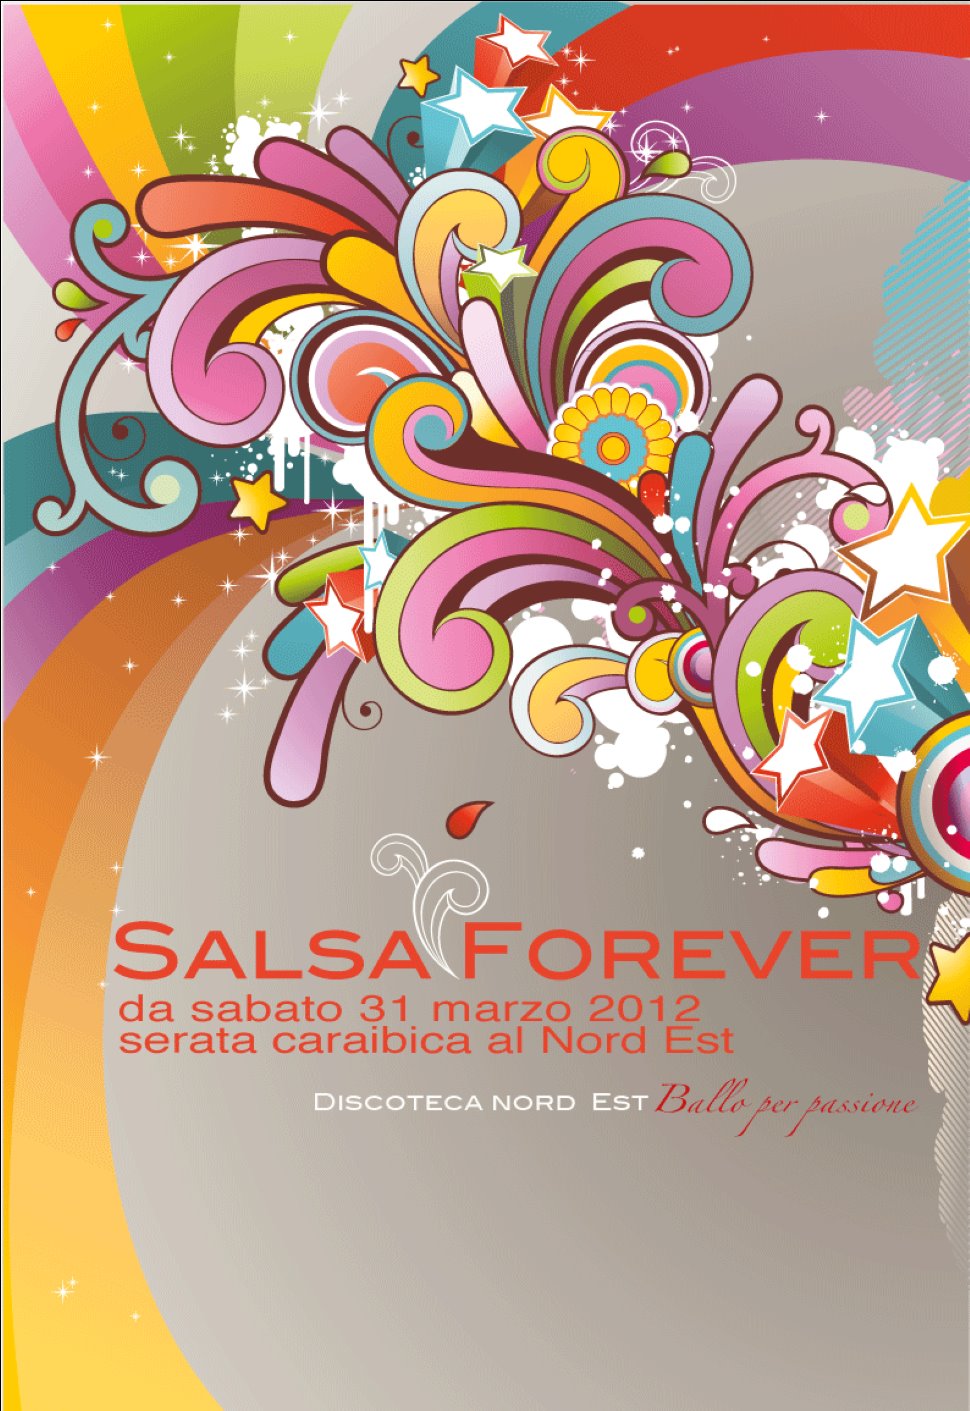 Salsa Forever: ultimo sabato latino!